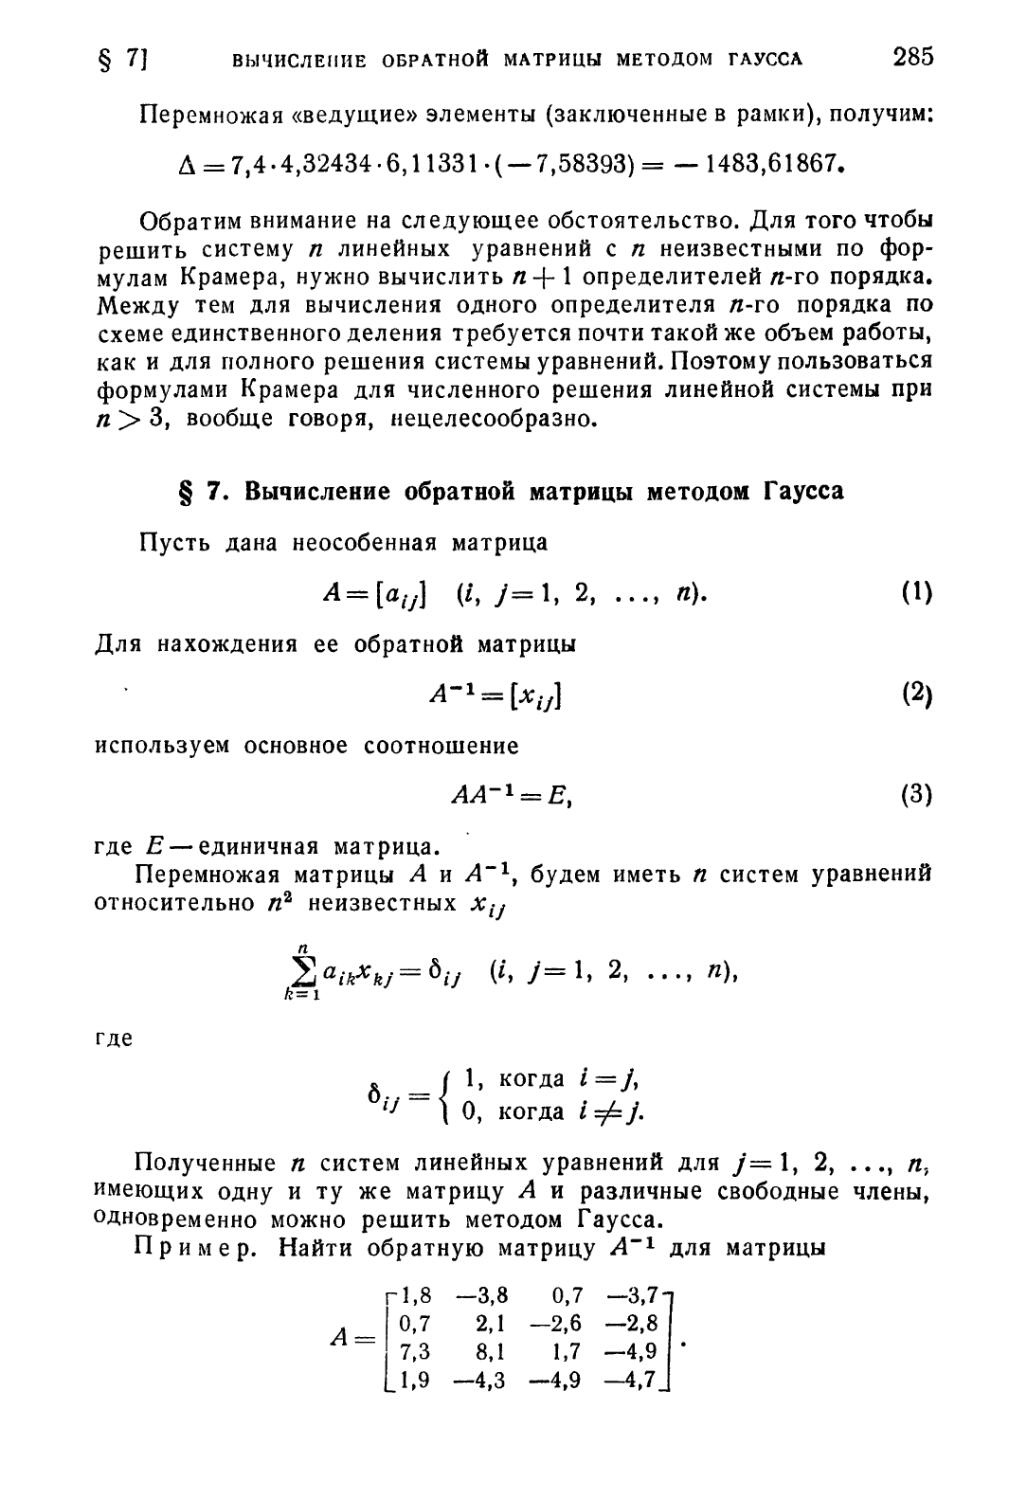 § 7. Вычисление обратной матрицы методом Гаусса